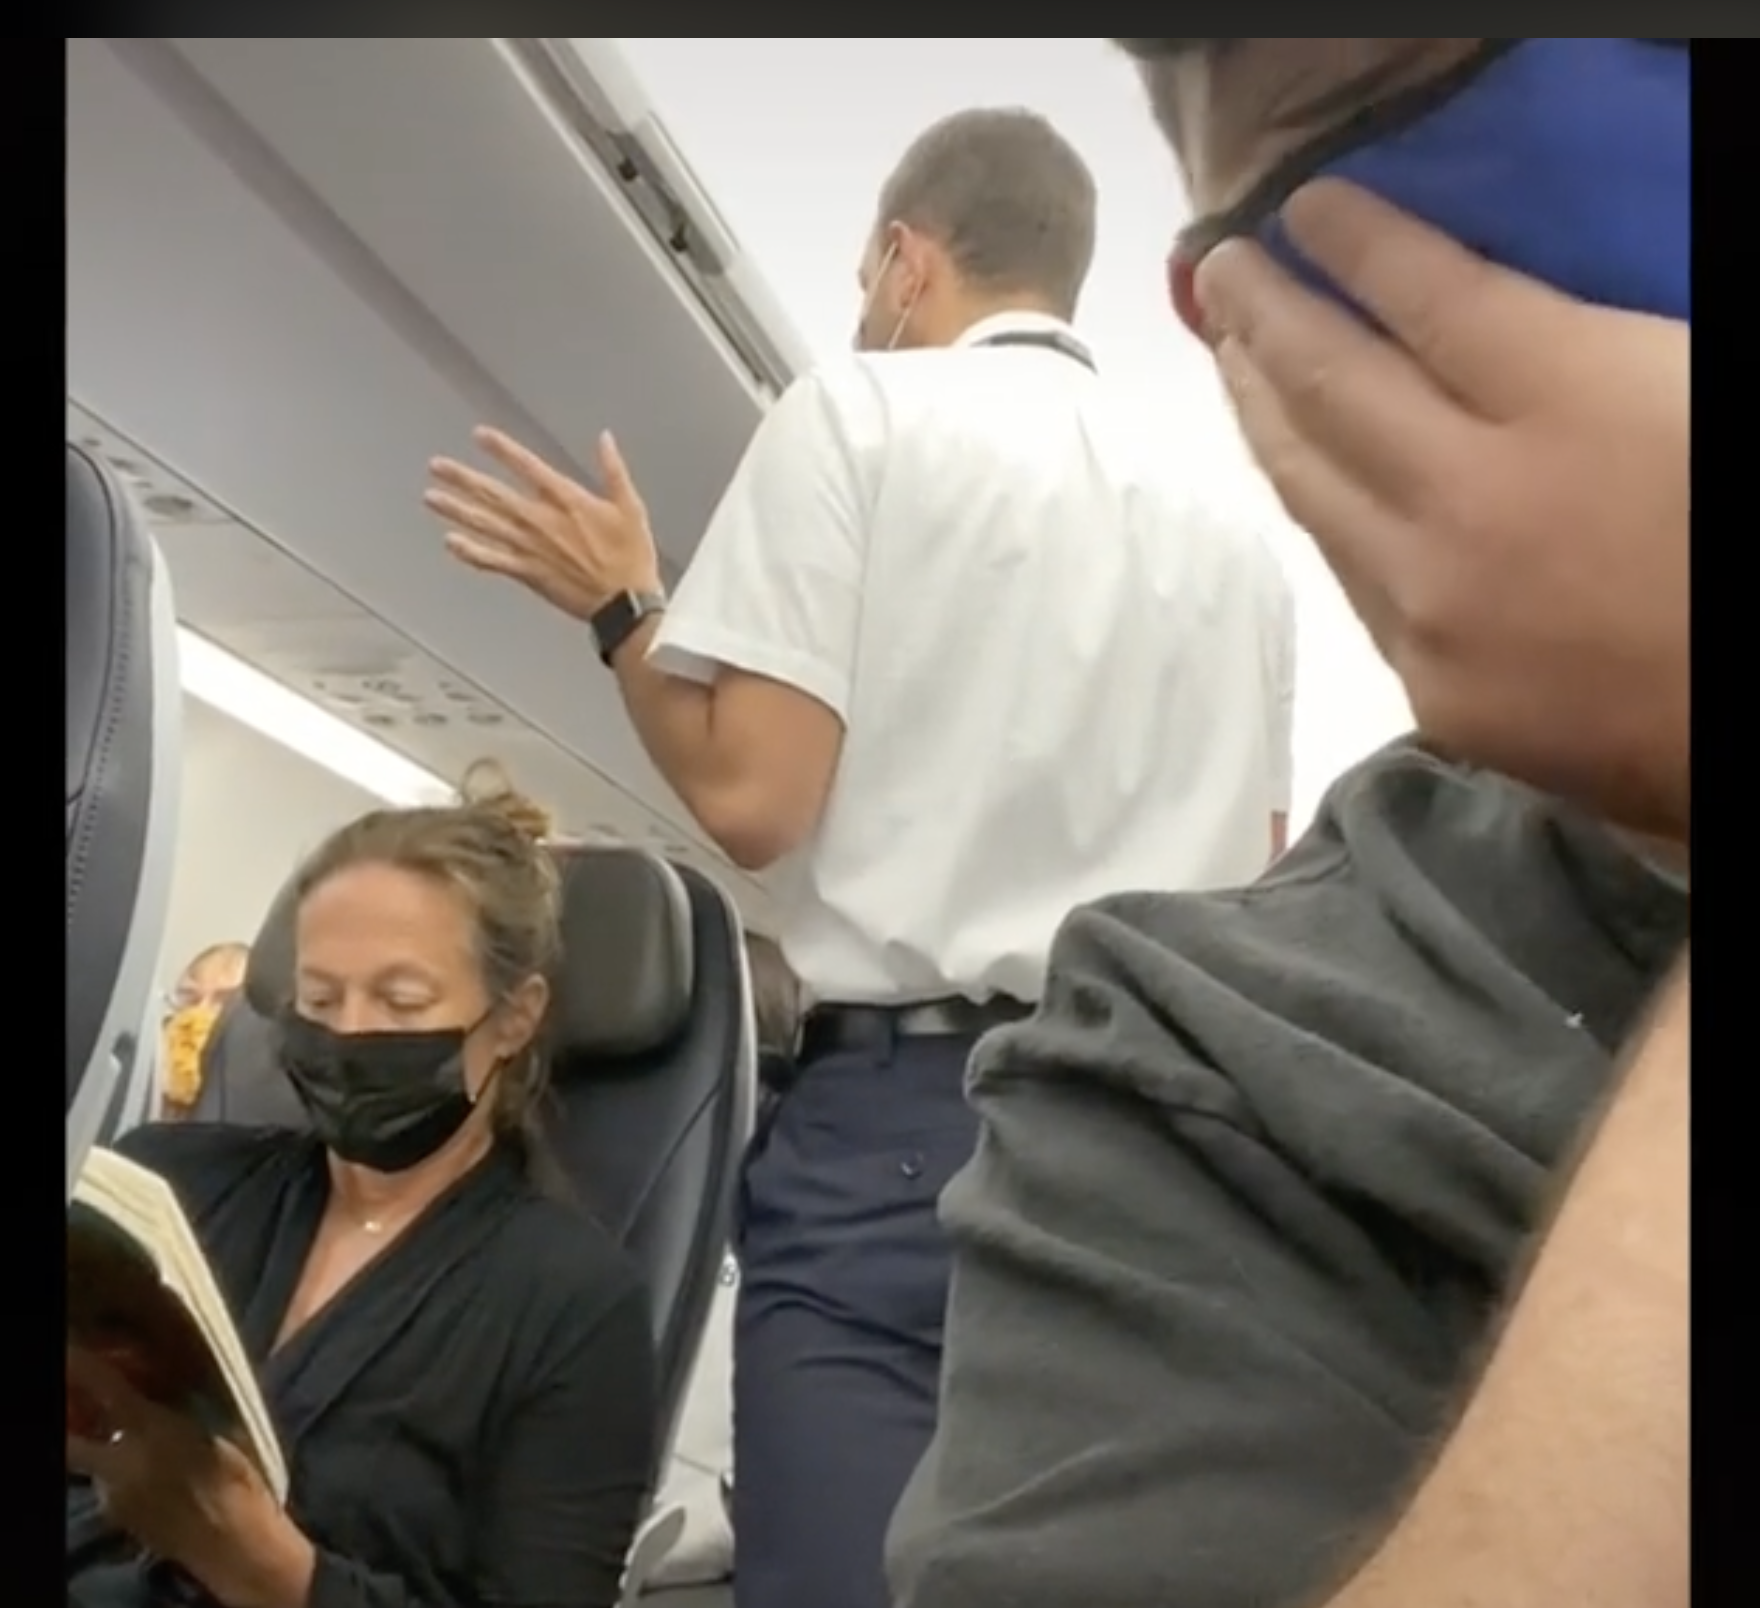 L'une des agents de bord est vue en train de parler à un passager apparemment indiscipliné en plein vol. | Source : tiktok.com/@brentunderwood